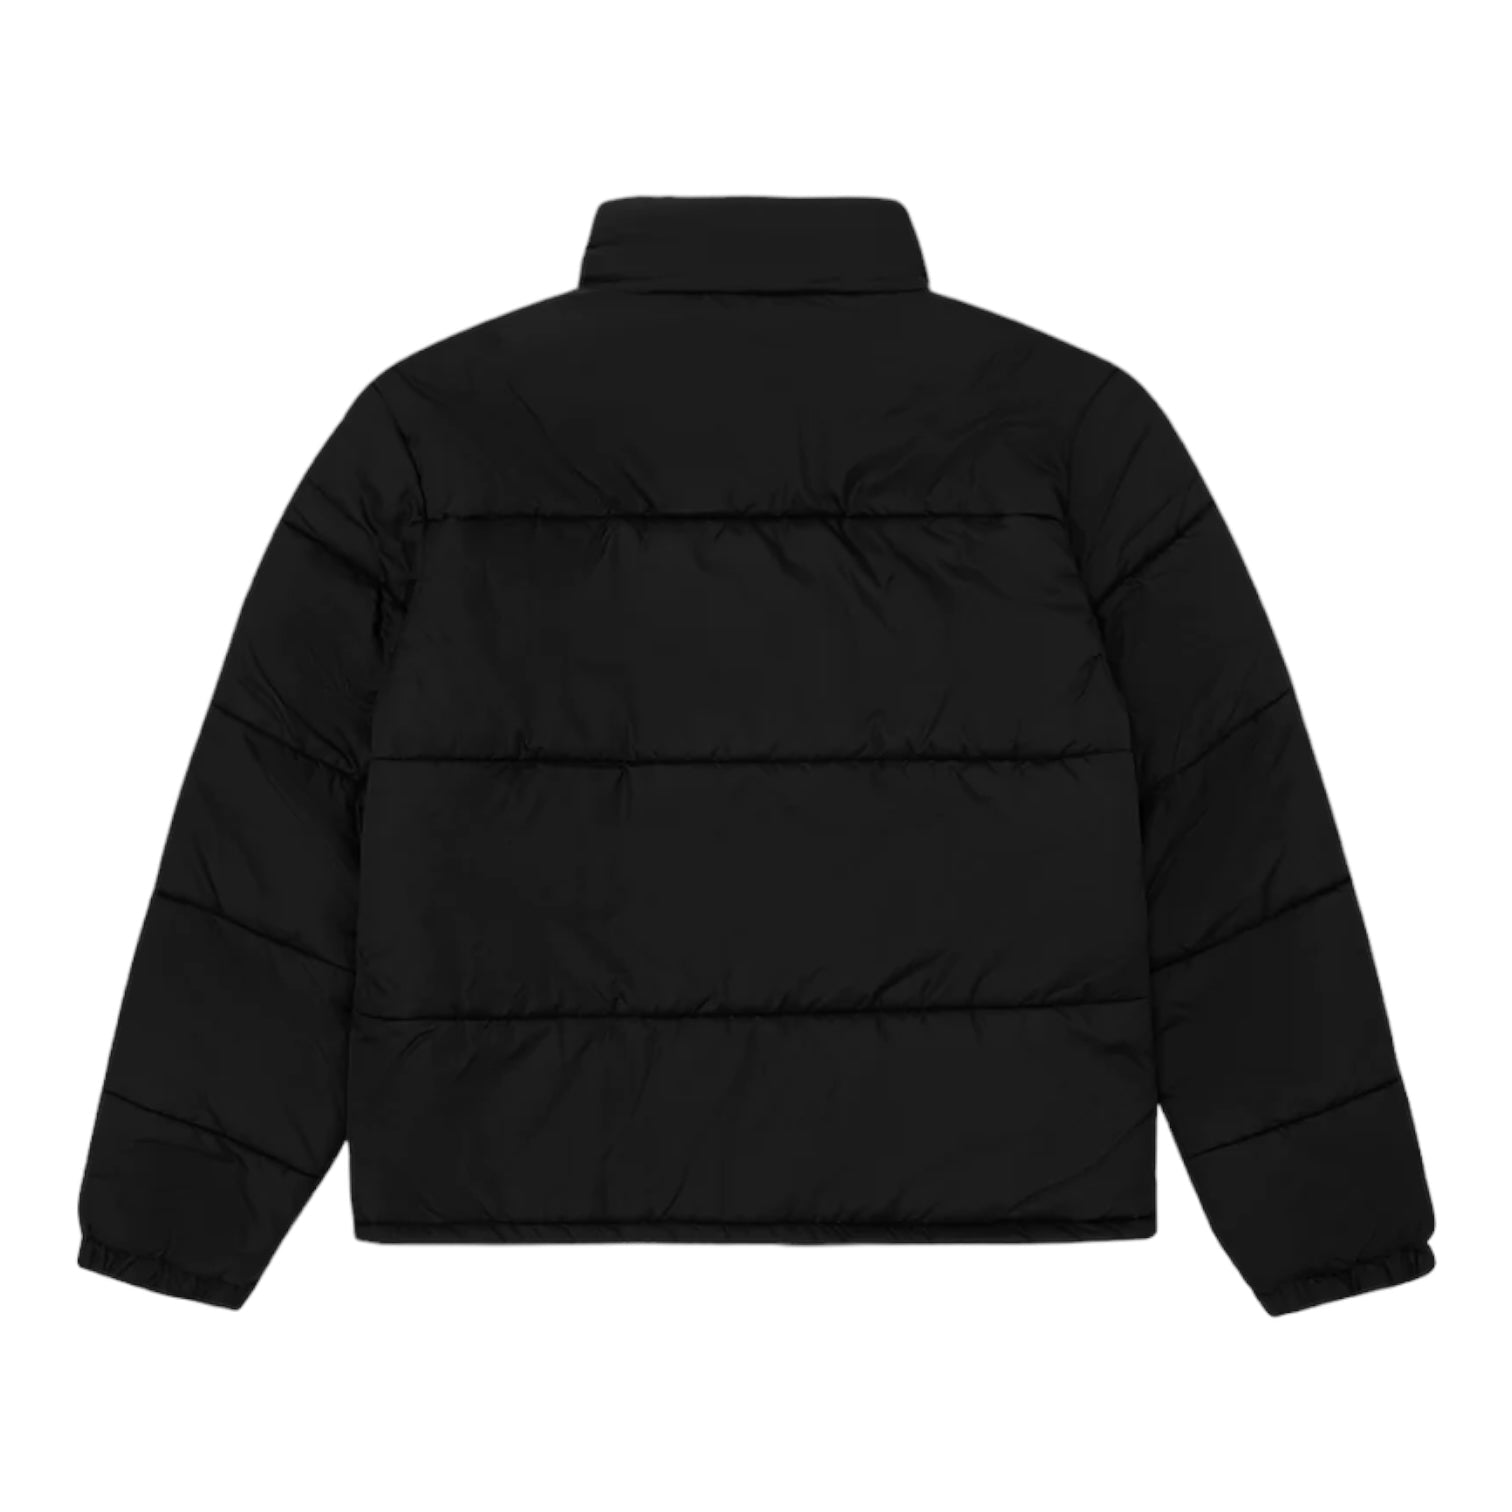 Billionaire Boys Club Small Arch Logo Puffer Jacket Black